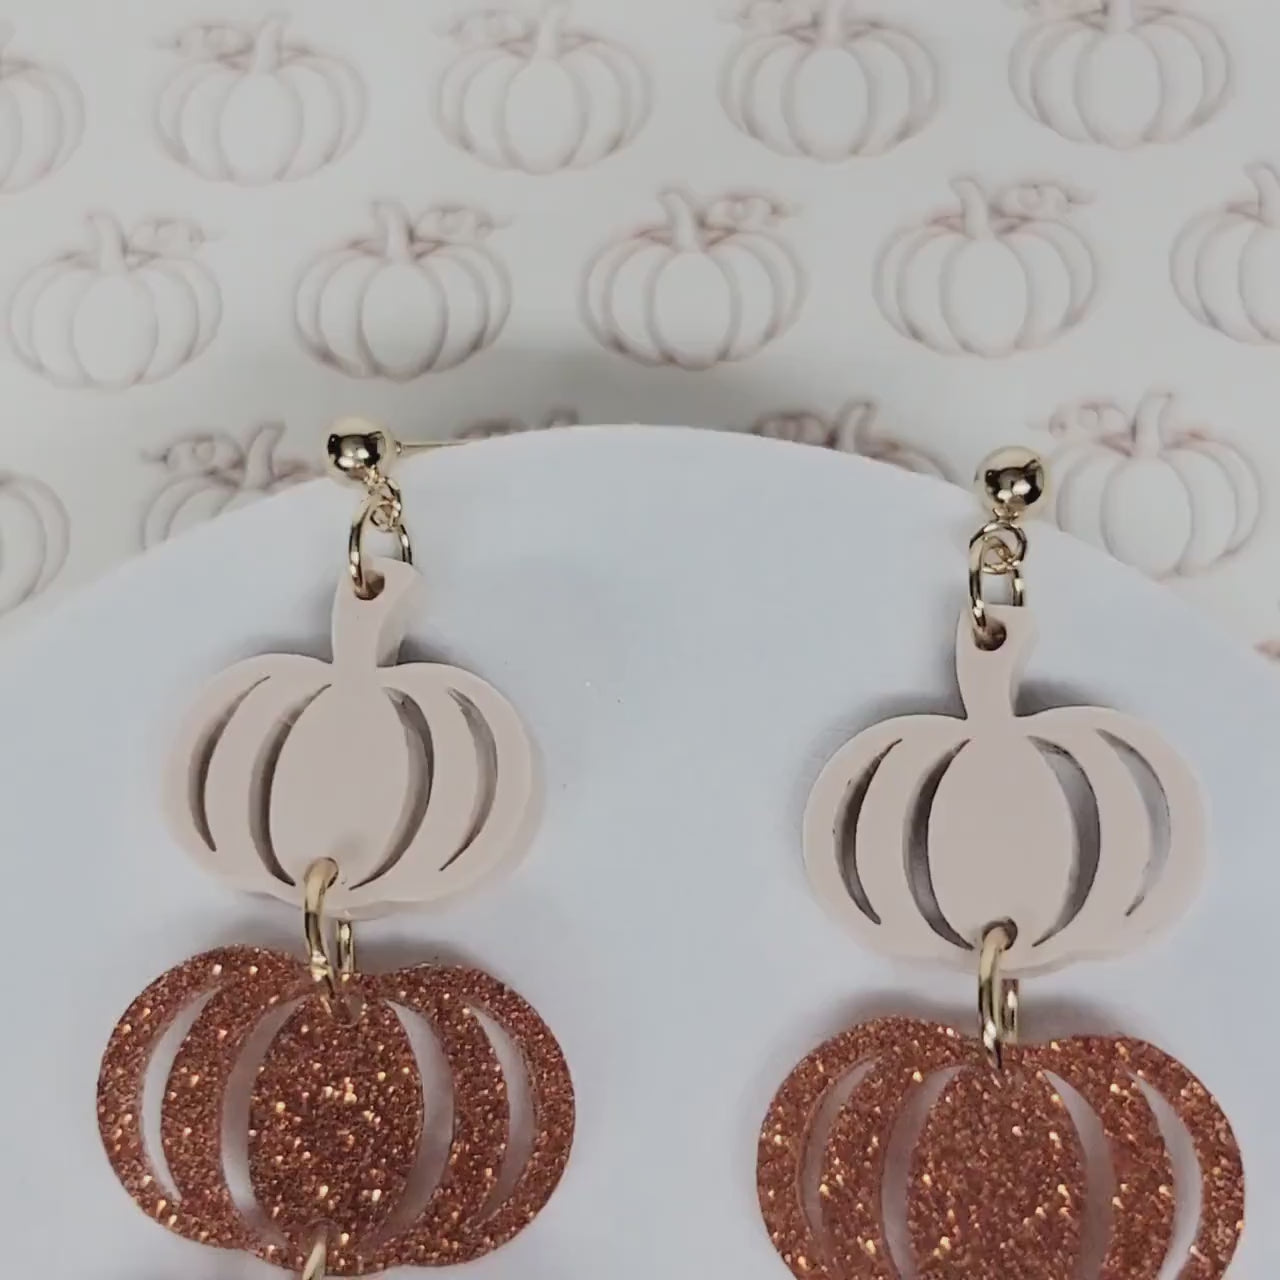 Stacked Pumpkin Earrings, Thanksgiving Earrings, Acrylic Pumpkin Earrings, Ombre Pumpkin Fall Earrings, Fall Jewelry, Pumpkin Jewelry